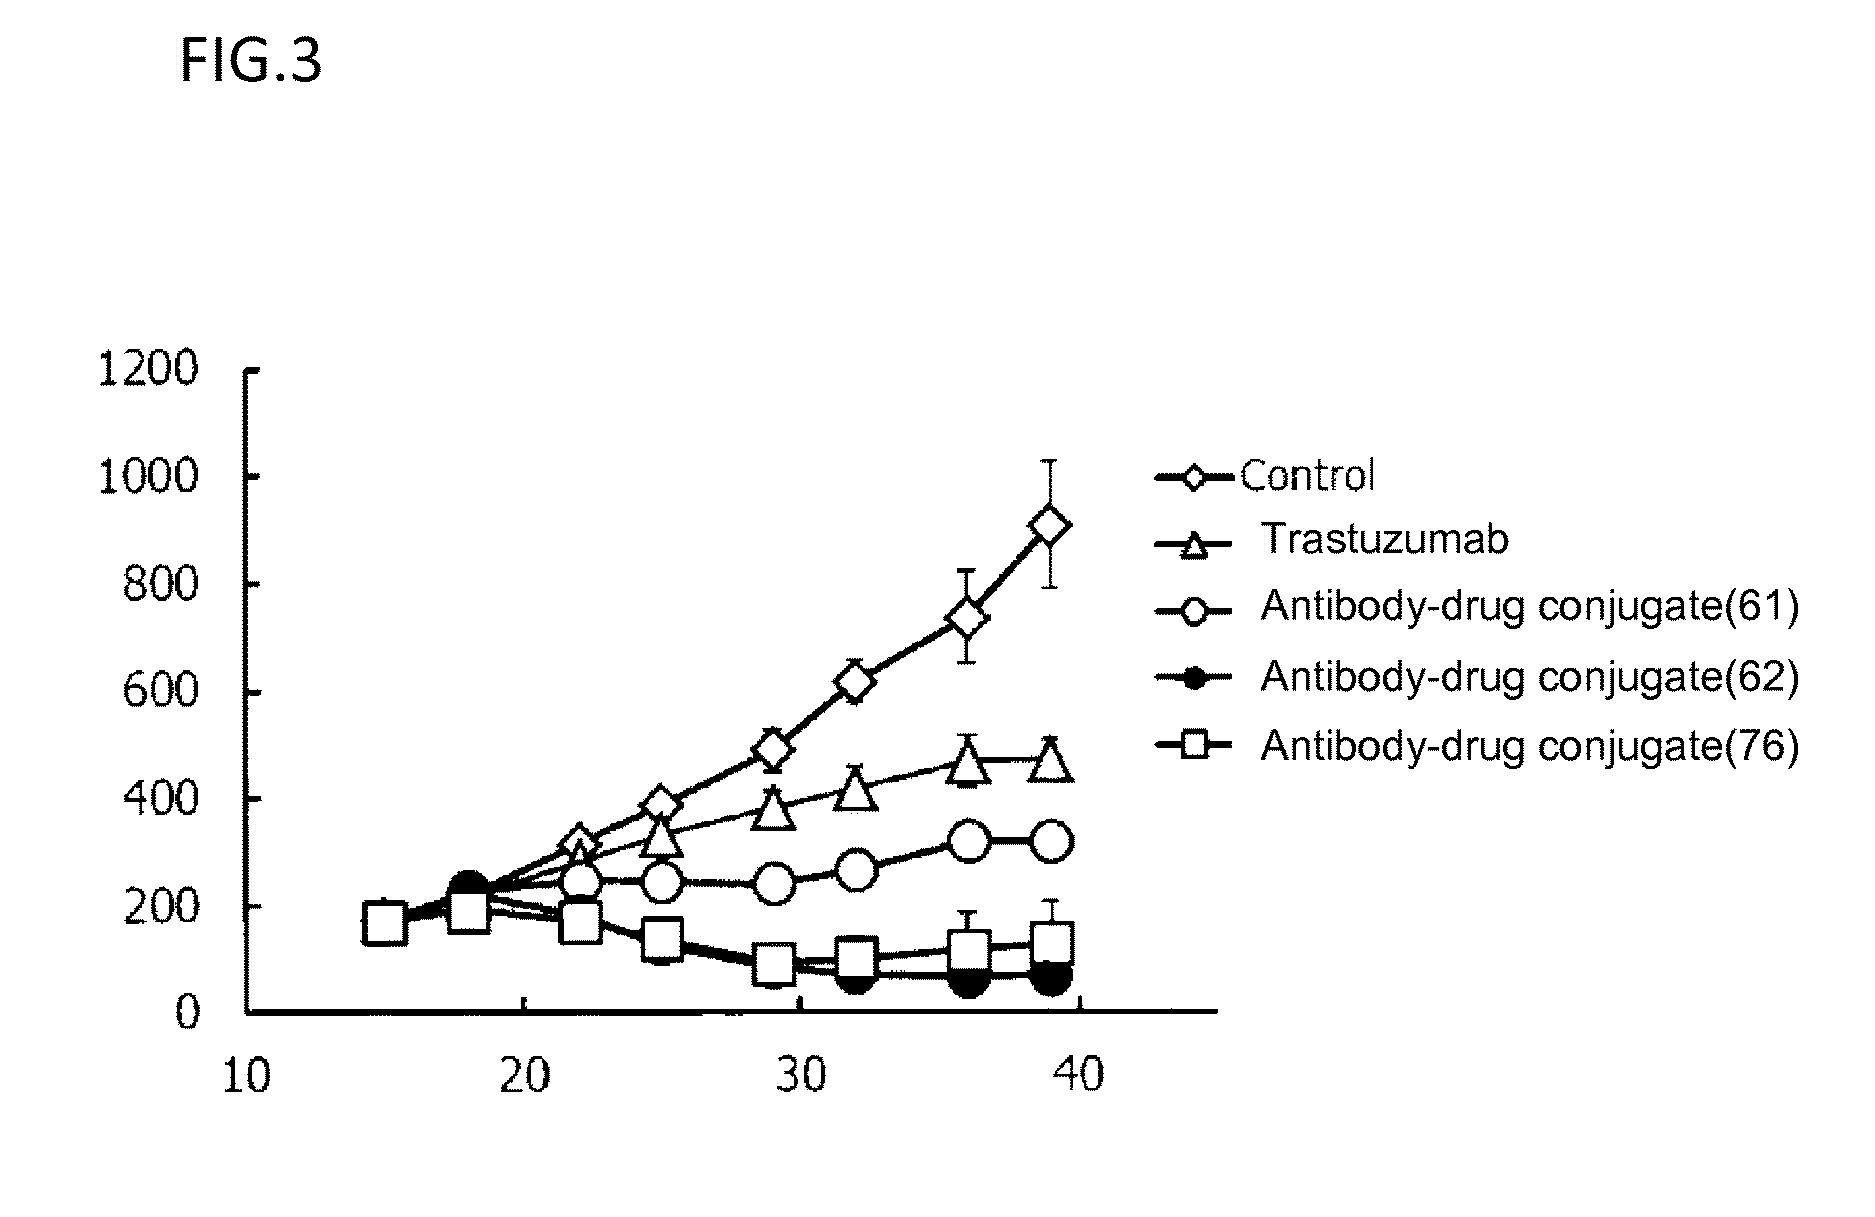 (Anti-her2 antibody)-drug conjugate